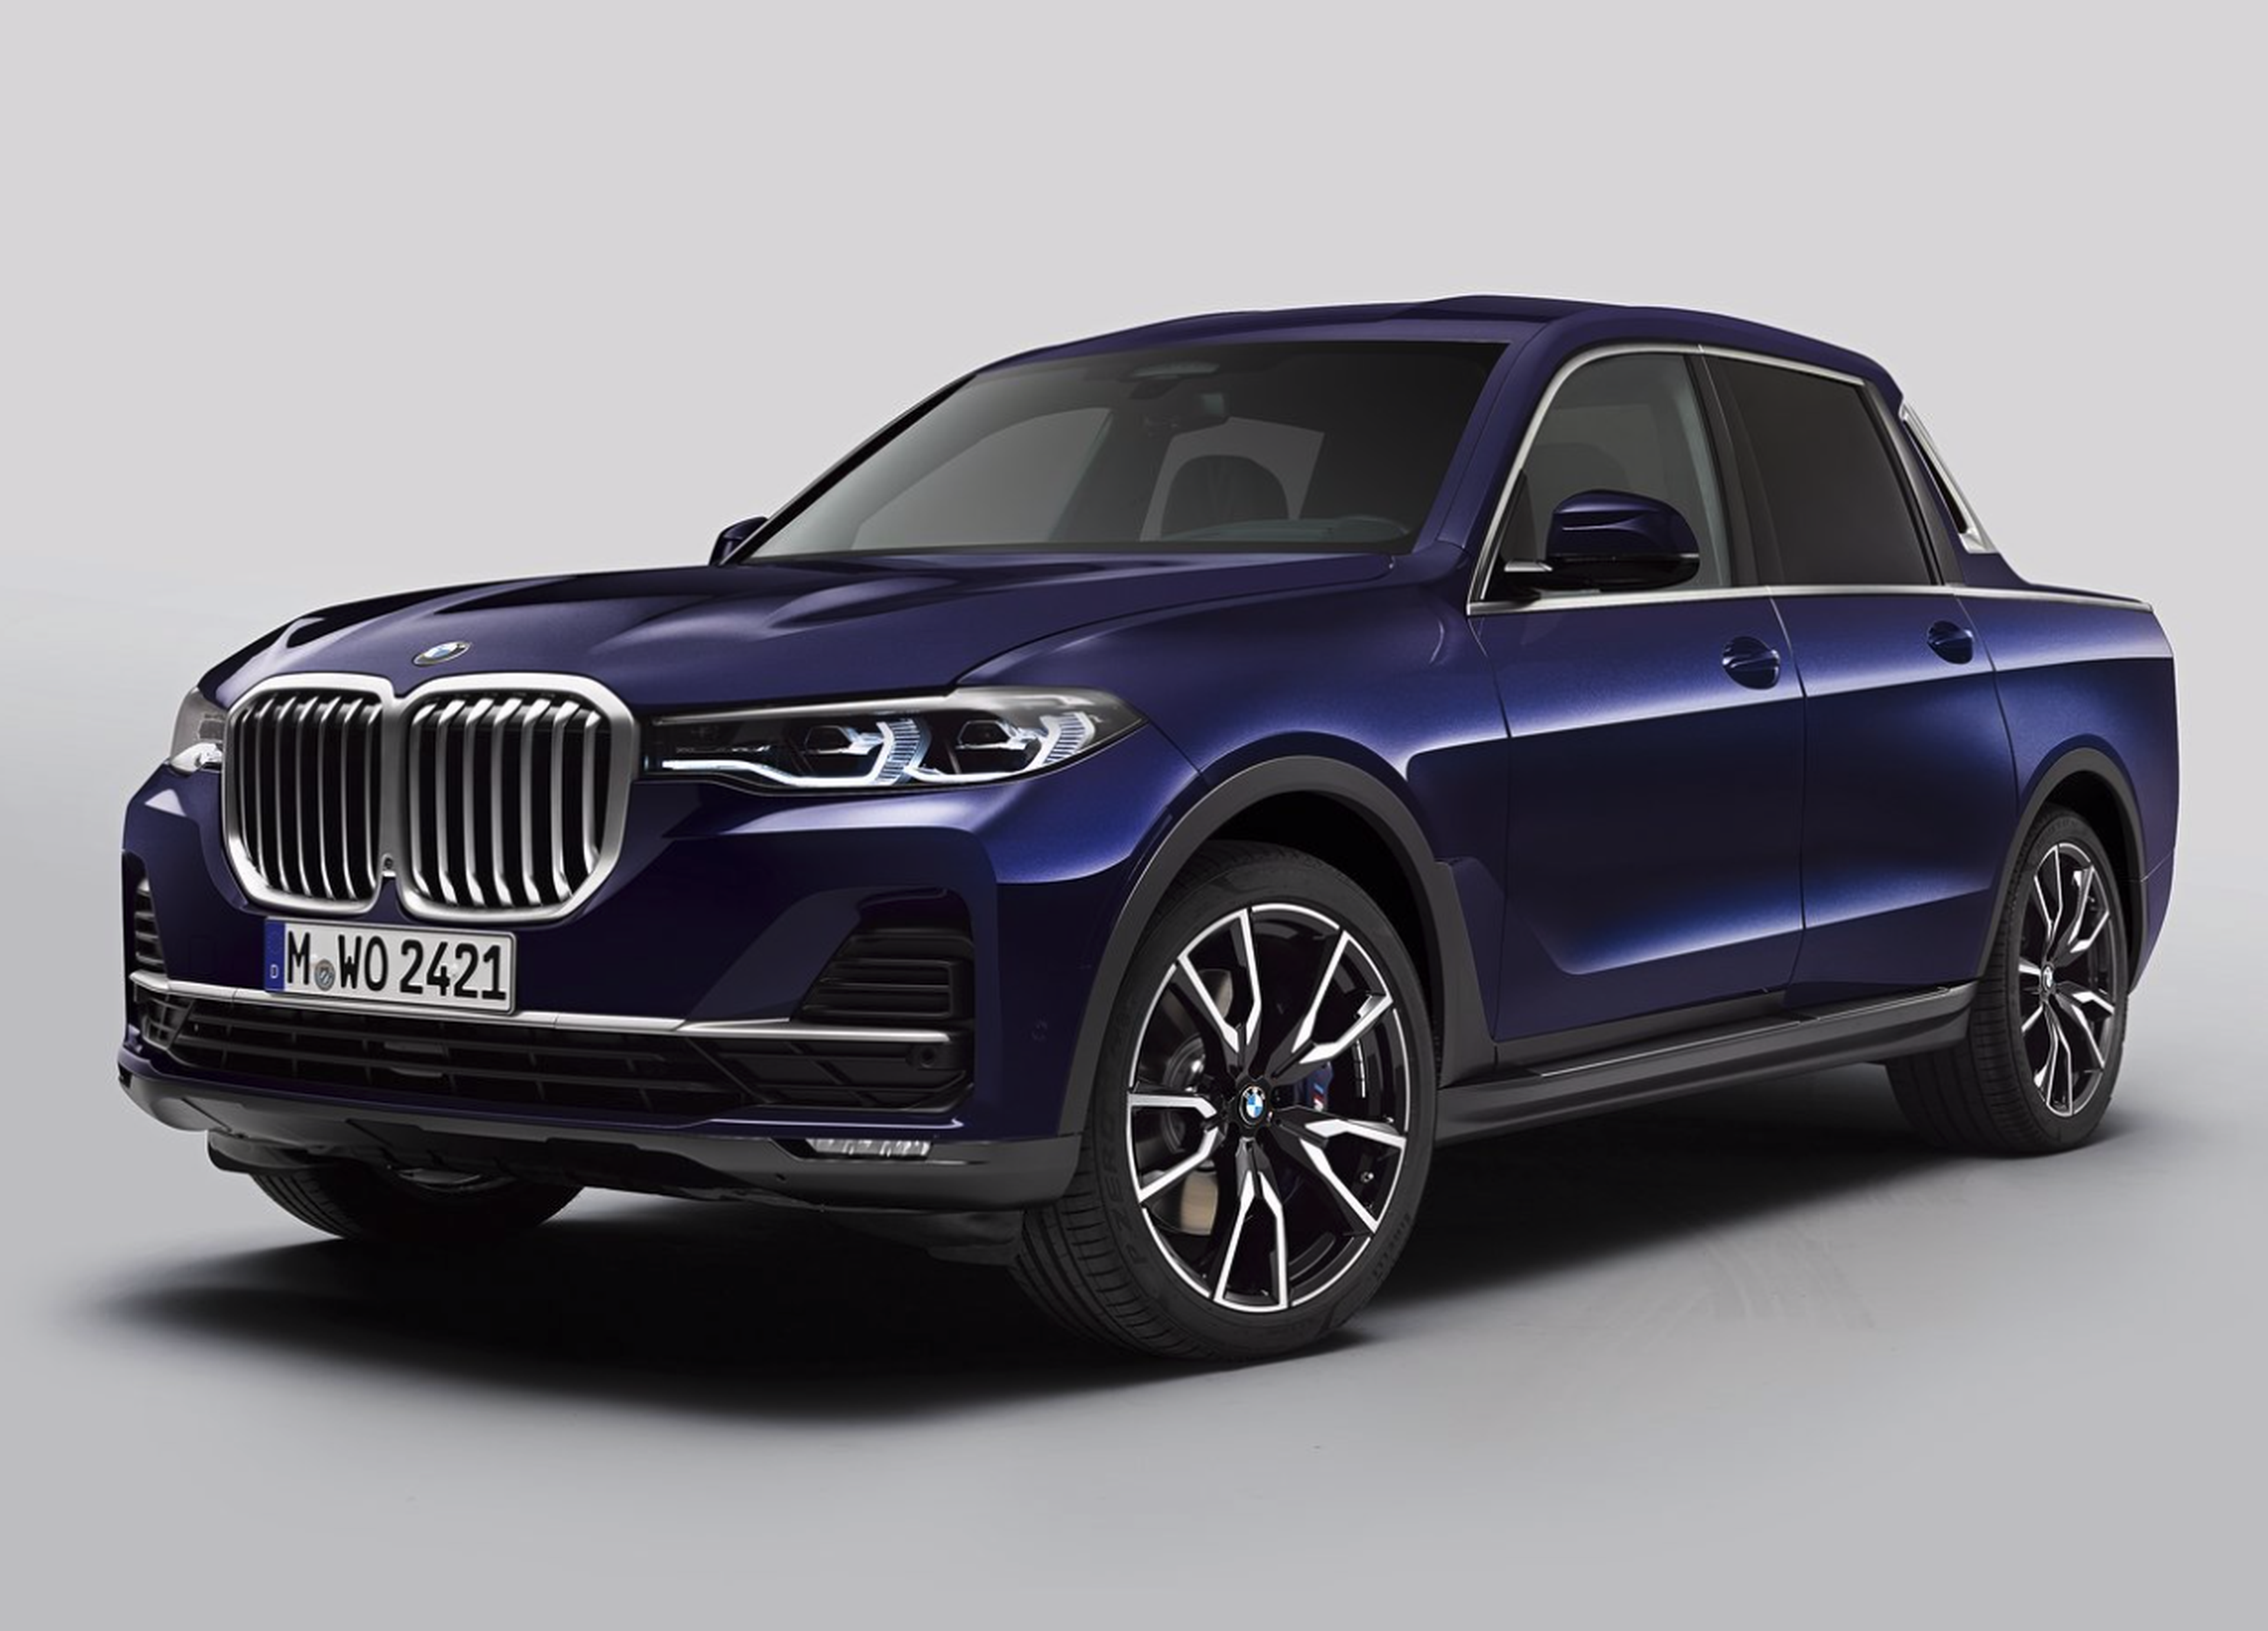 VÍDEO: BMW X7 Pick up, ¿esto va en serio?